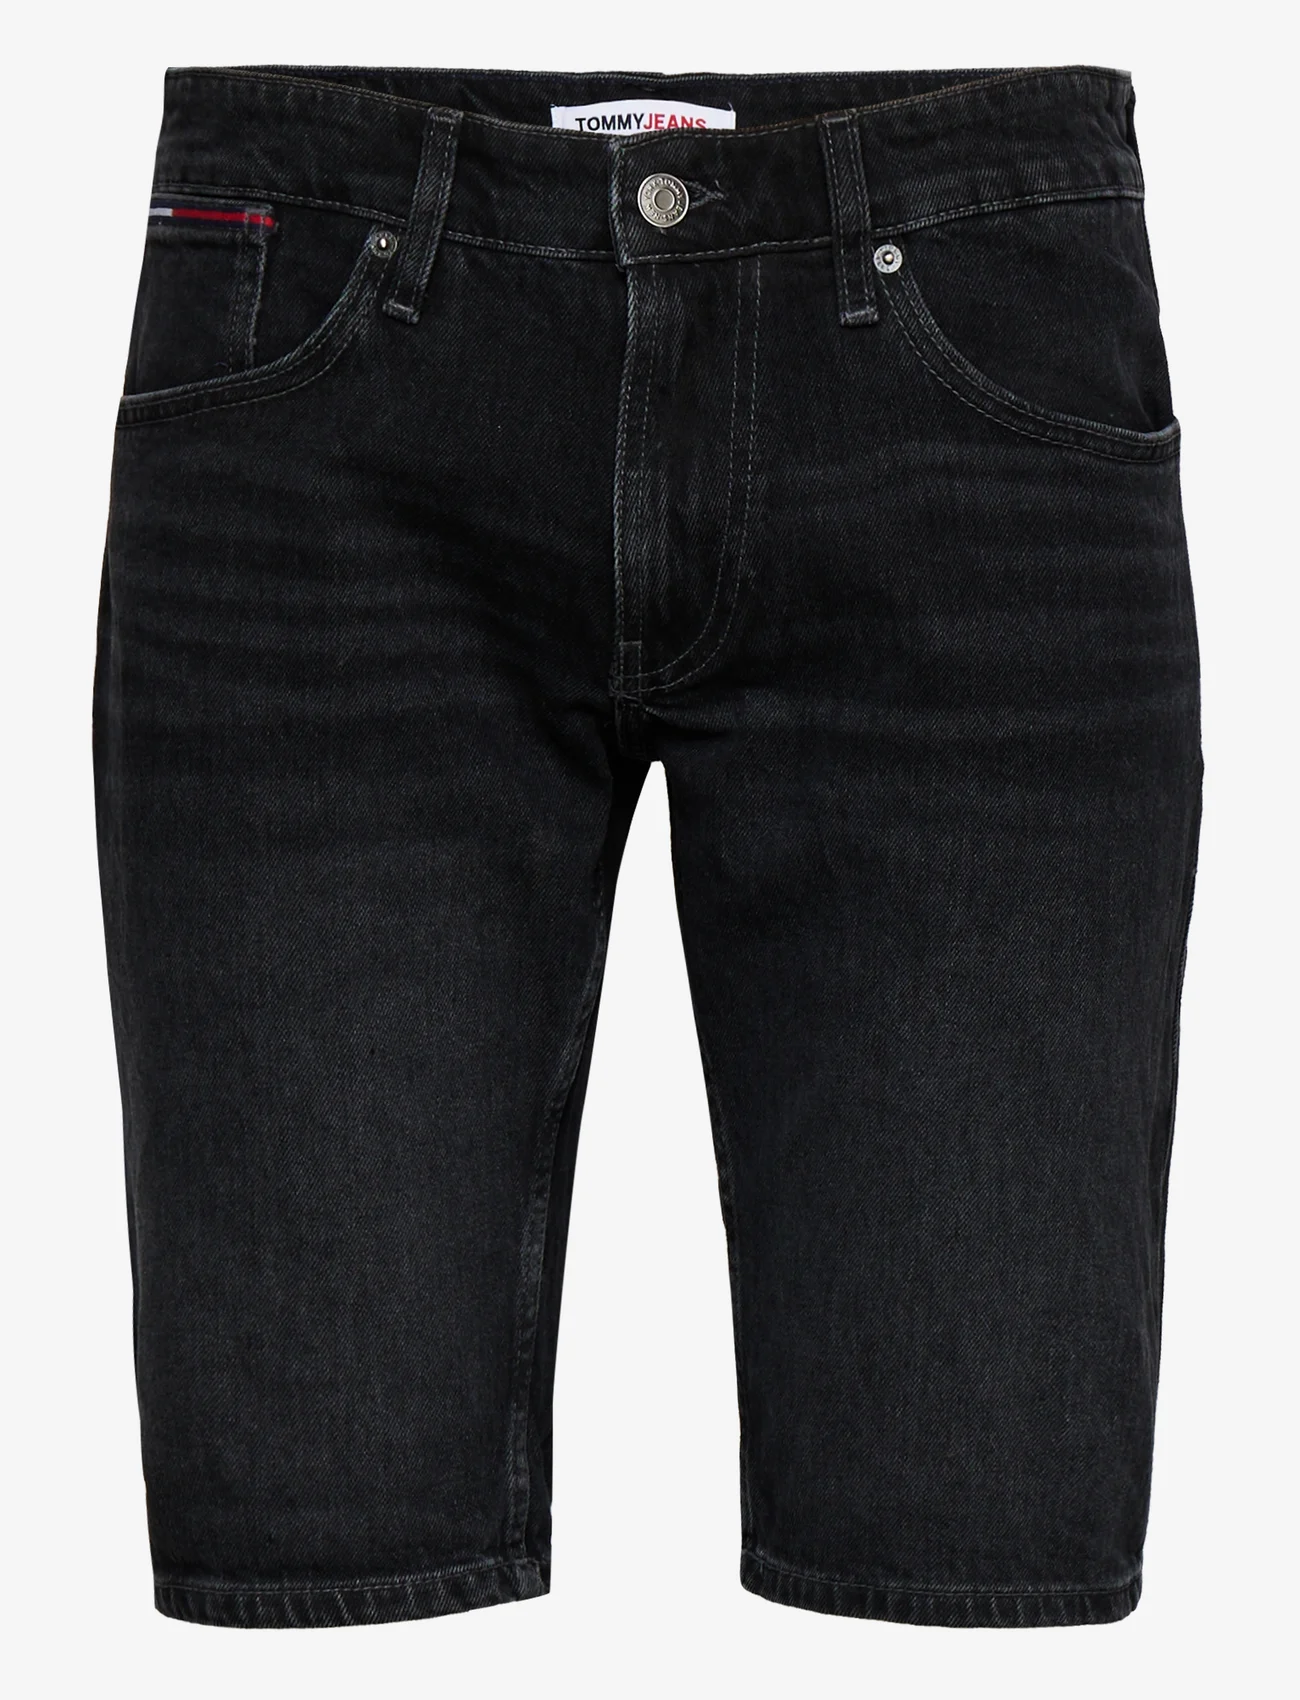 Tommy Jeans - RONNIE SHORT BG0181 - denim shorts - denim black - 0